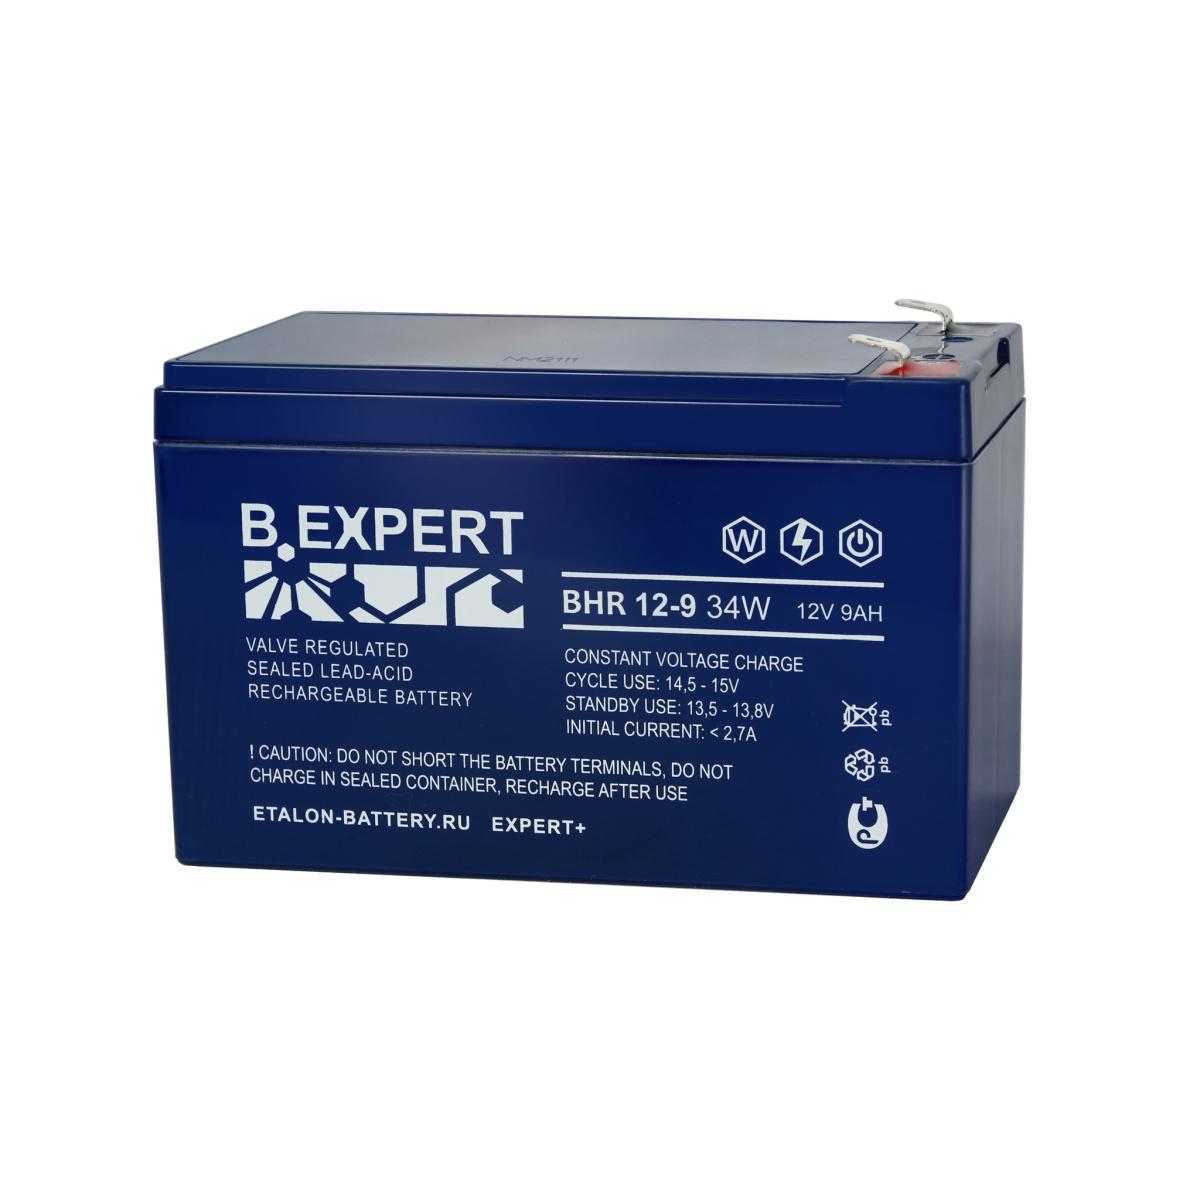 EXPERT BHR 12-9 34W Аккумулятор герметичный свинцово-кислотный